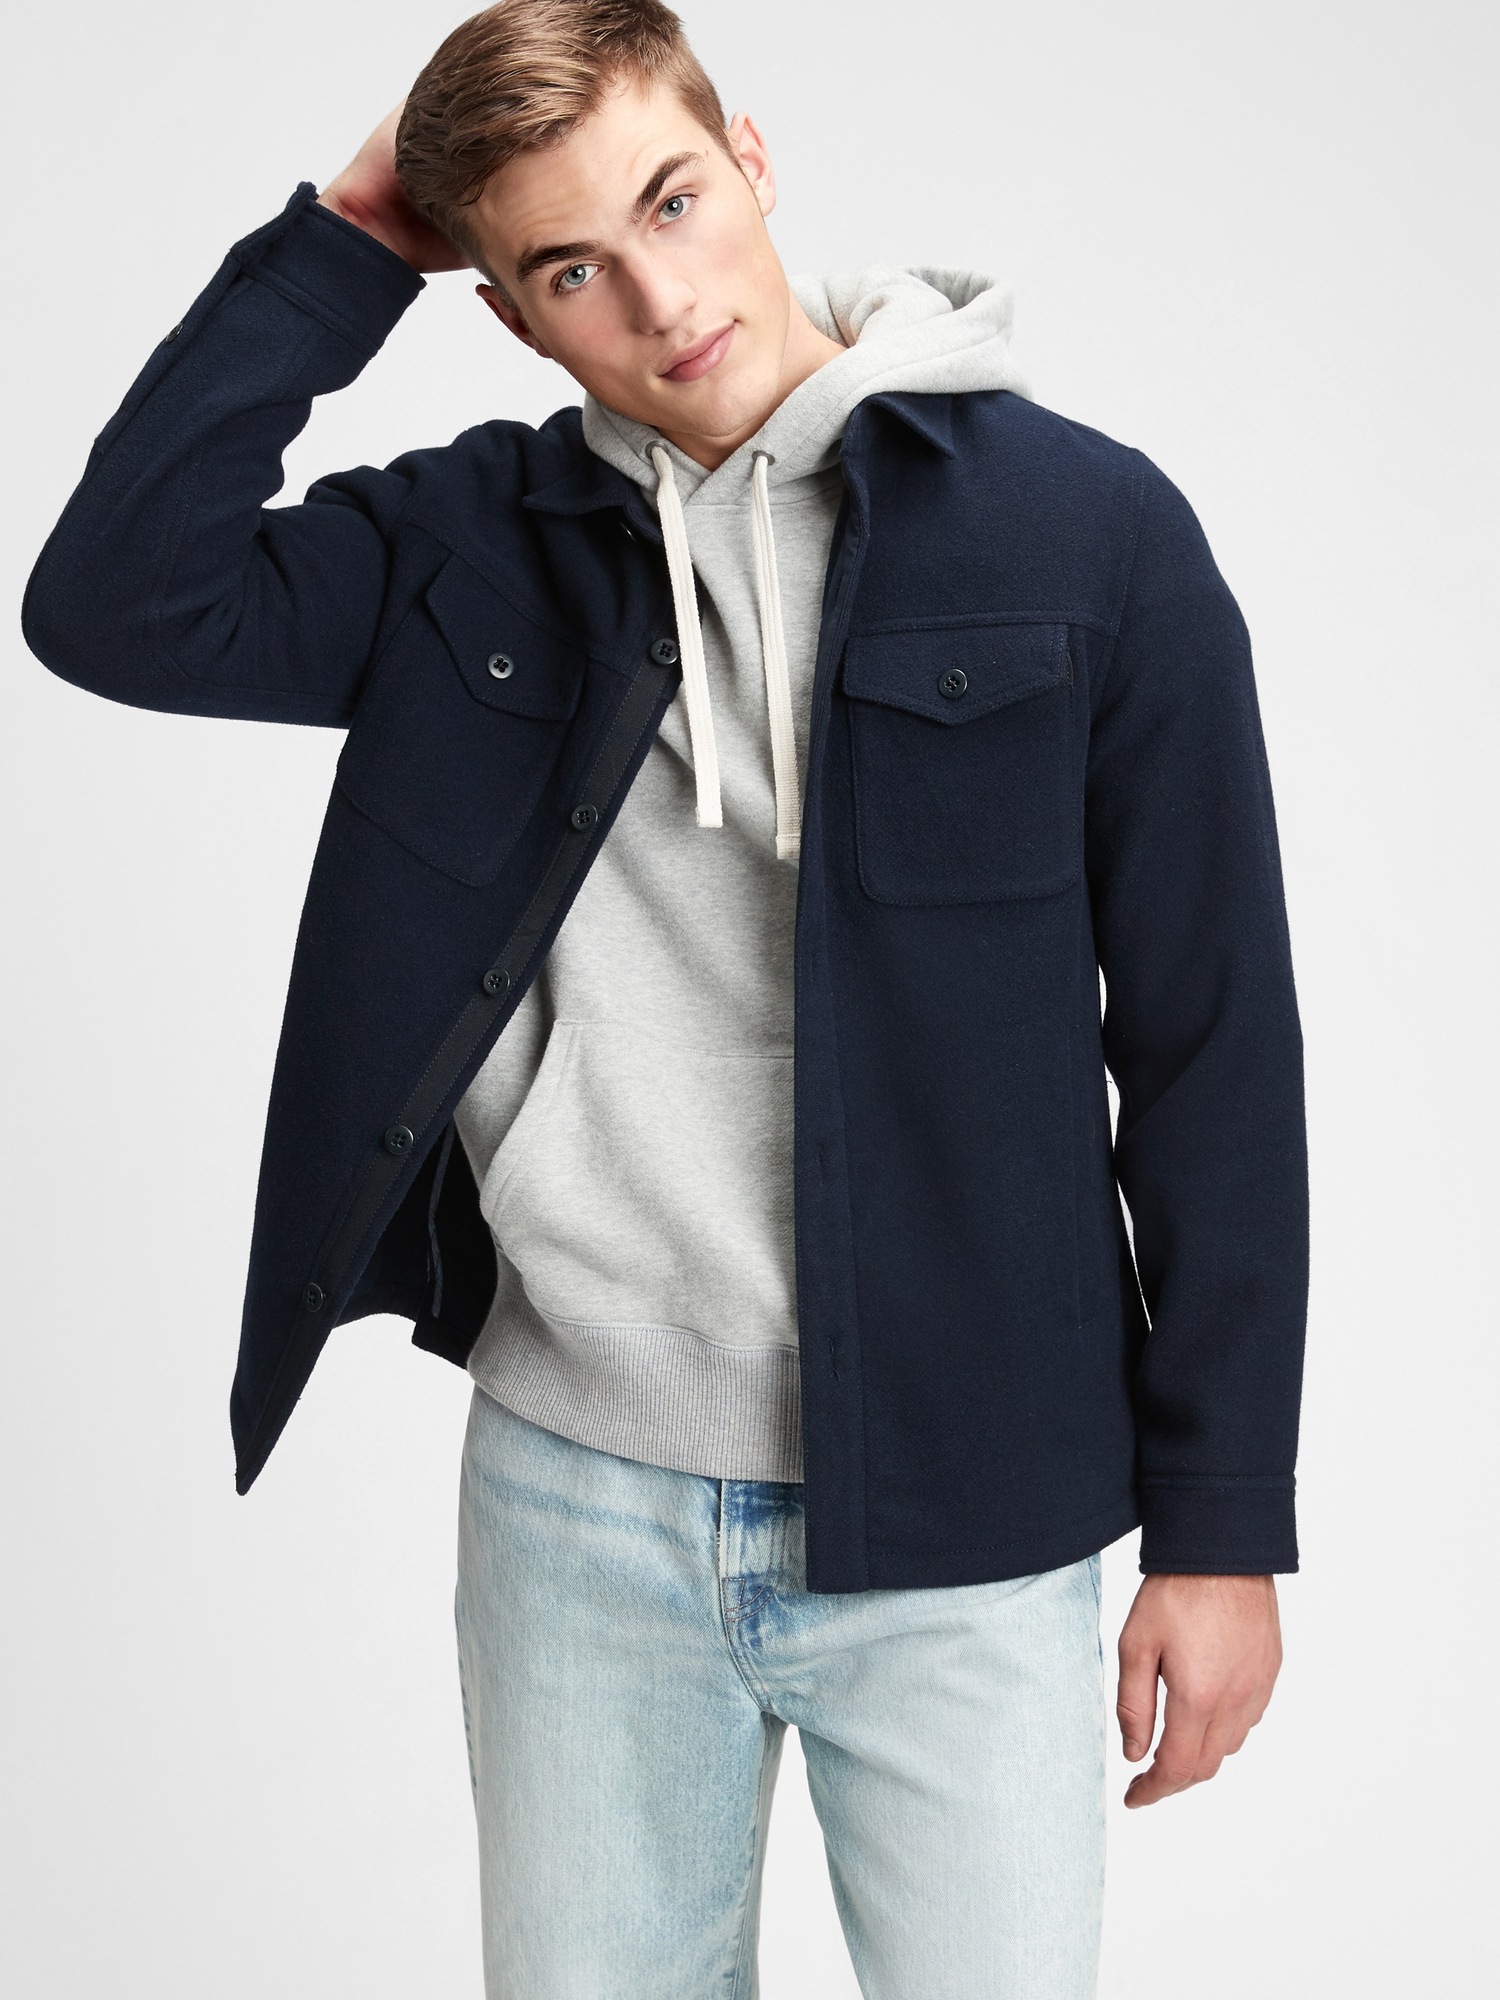 Wool Shirt Jacket | Gap